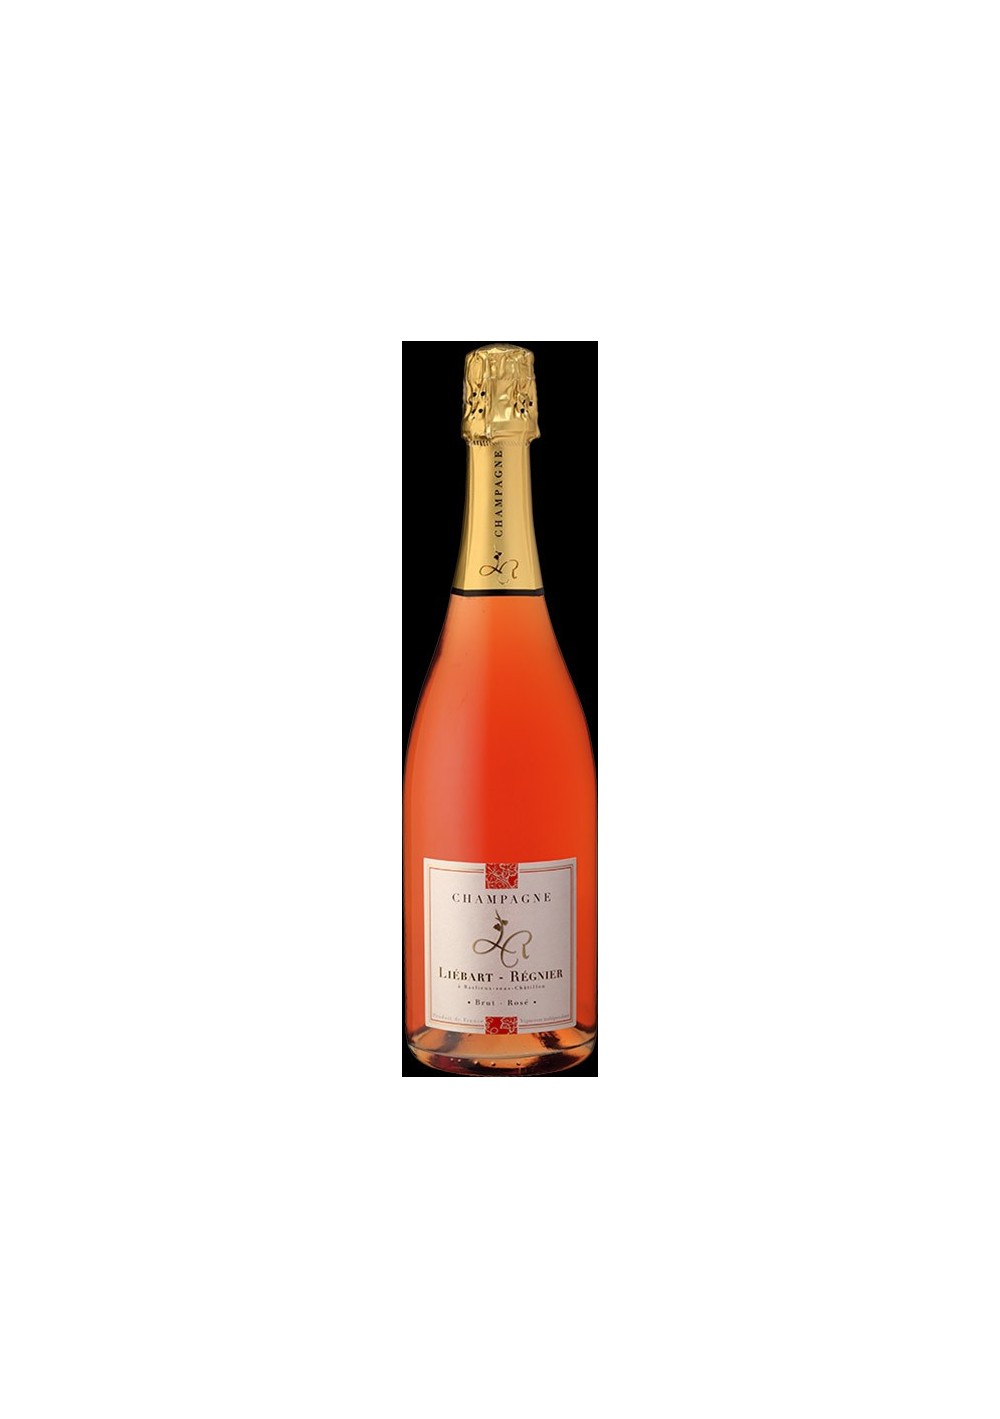 Champagne Liebart-Regnier rosé (75cl)